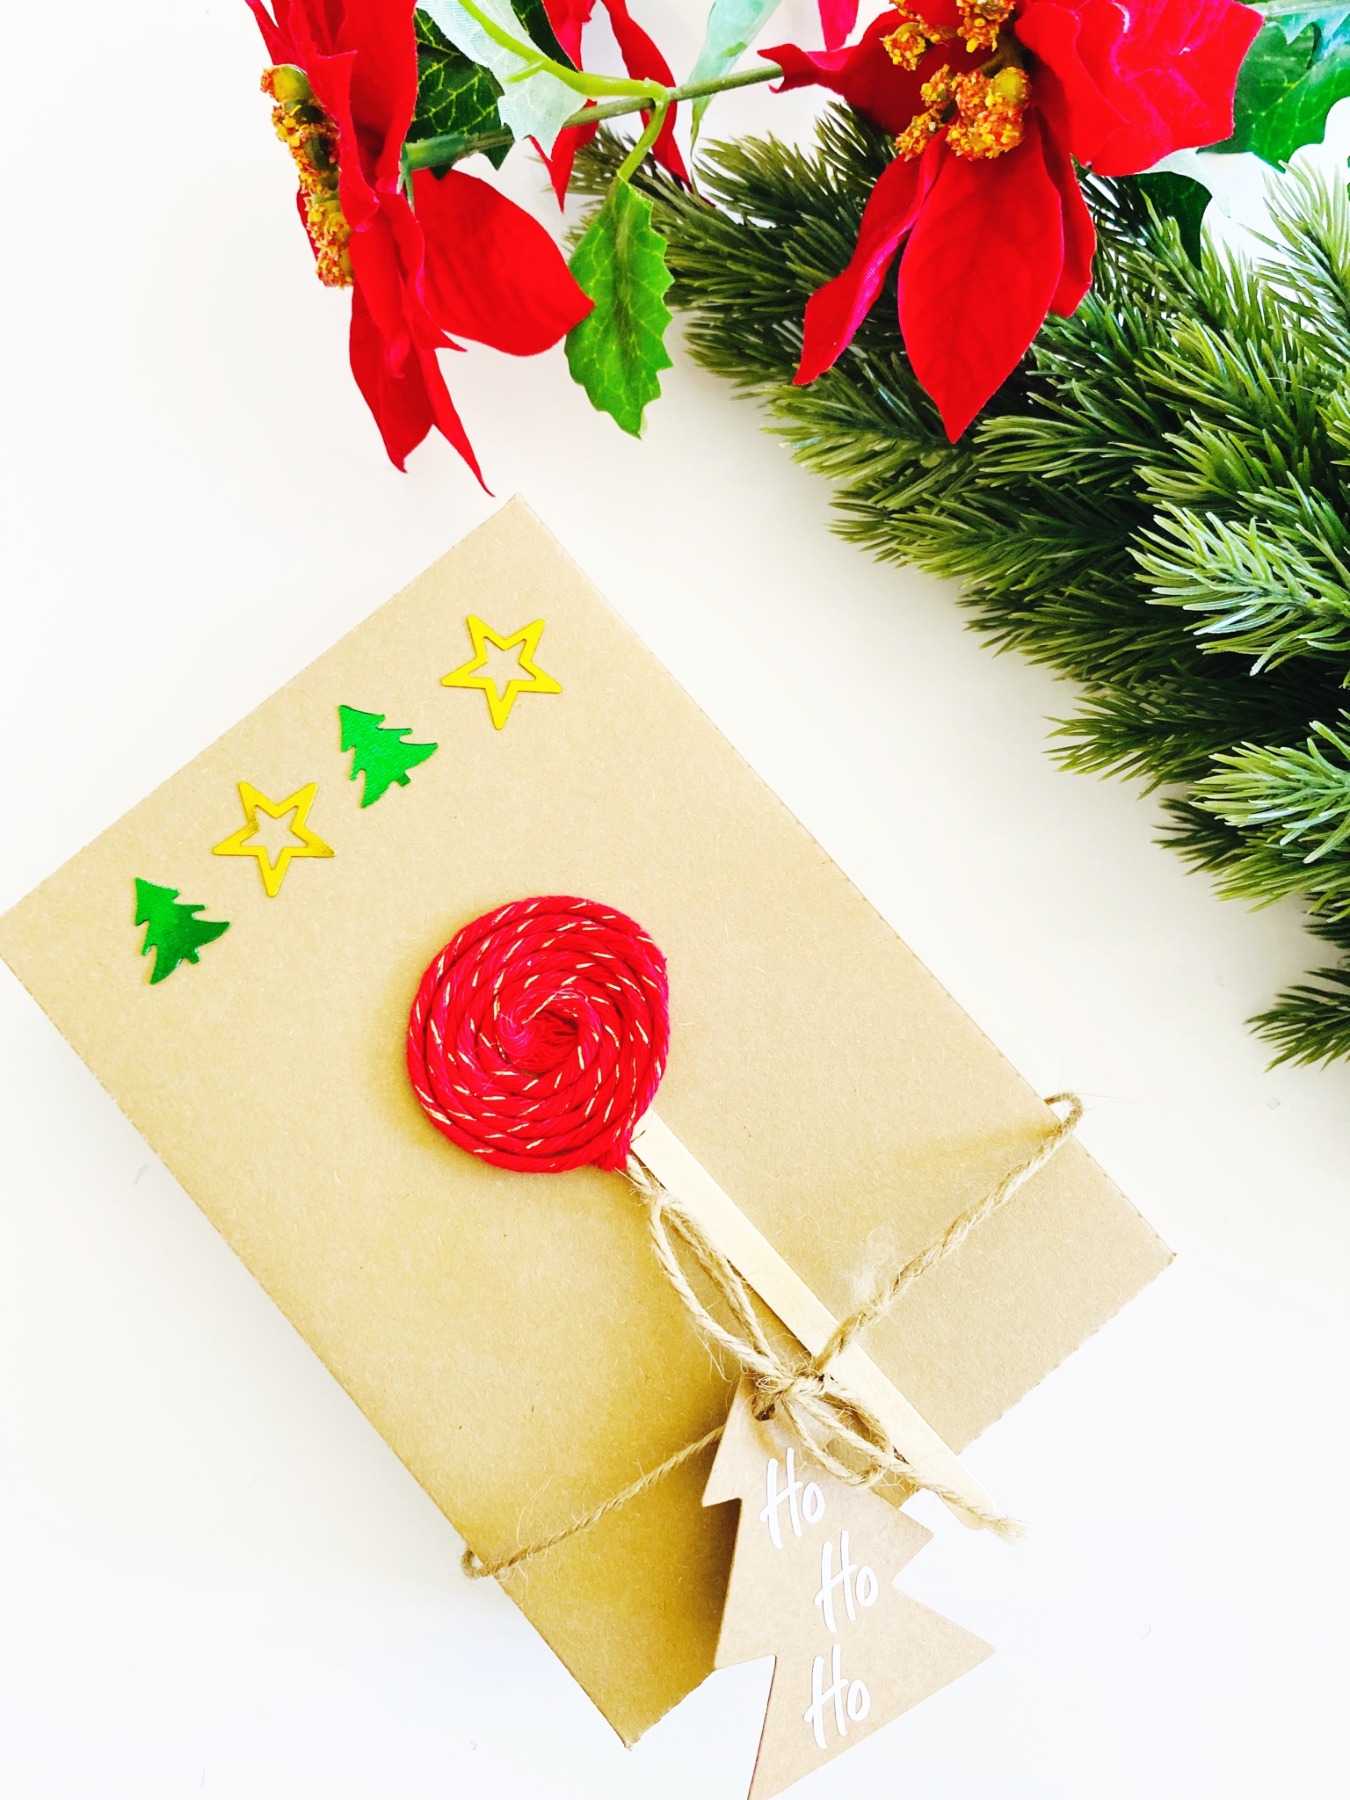 Bastelset für Weihnachten, DIY Kit Weihnachtskarten basteln, Weihnachtsgeschenke verpacken Ideen 17